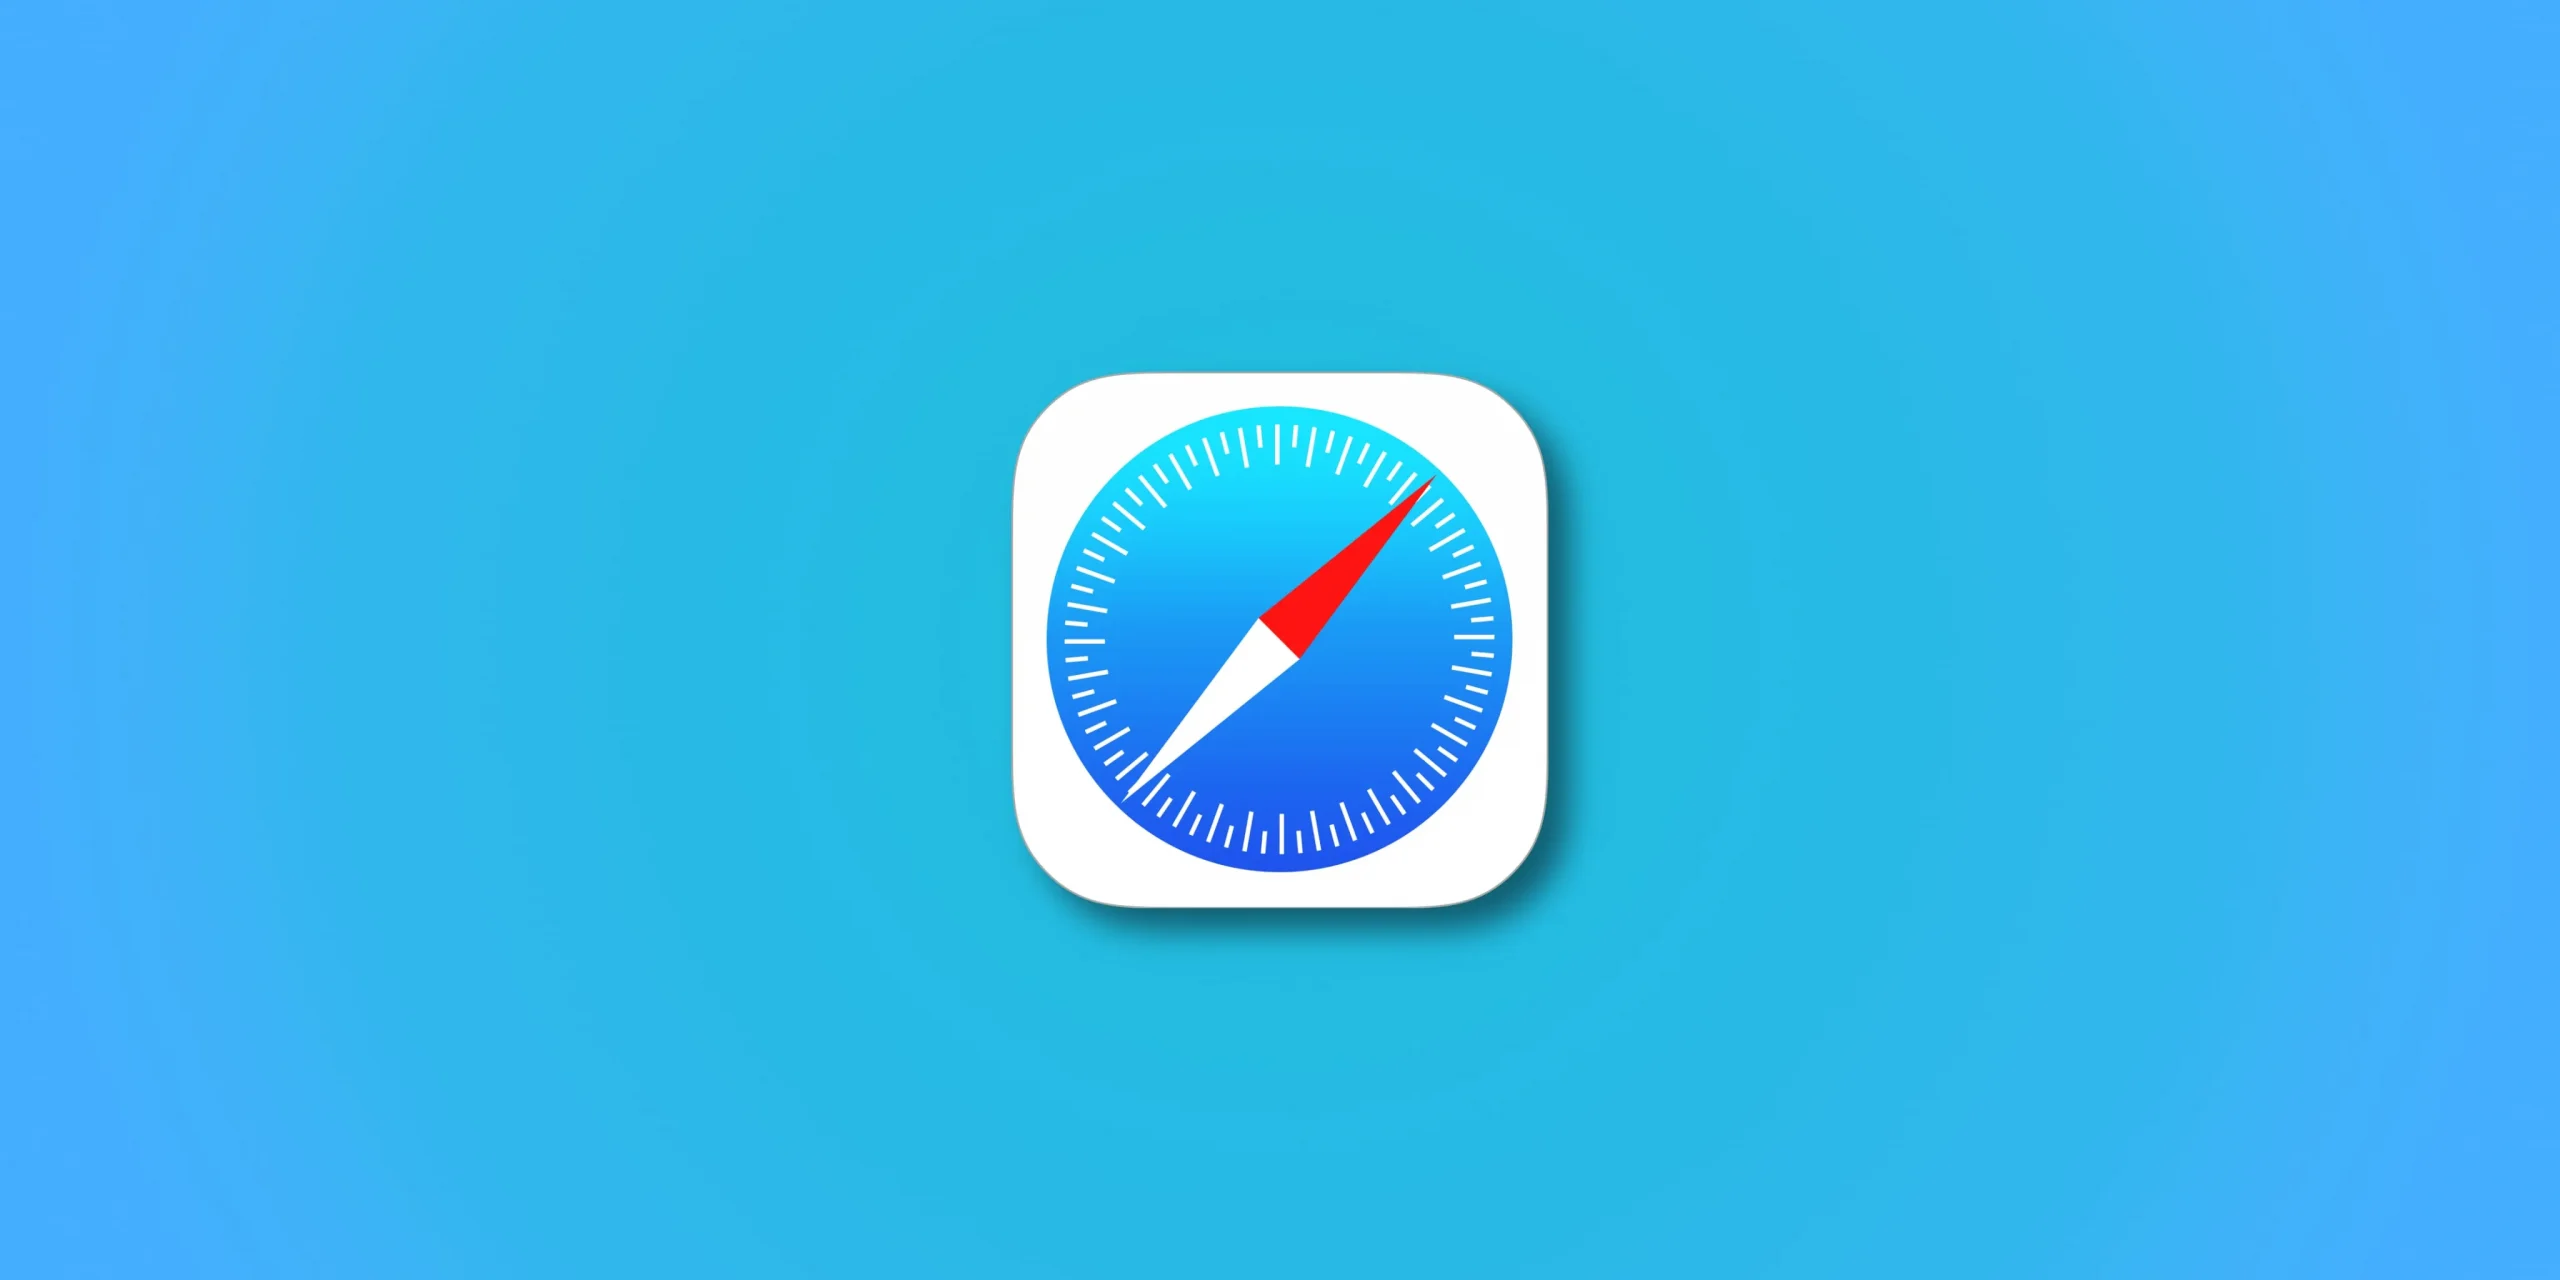 파란색 그라데이션 배경에 설정된 Apple Safari 로고를 보여주는 그림